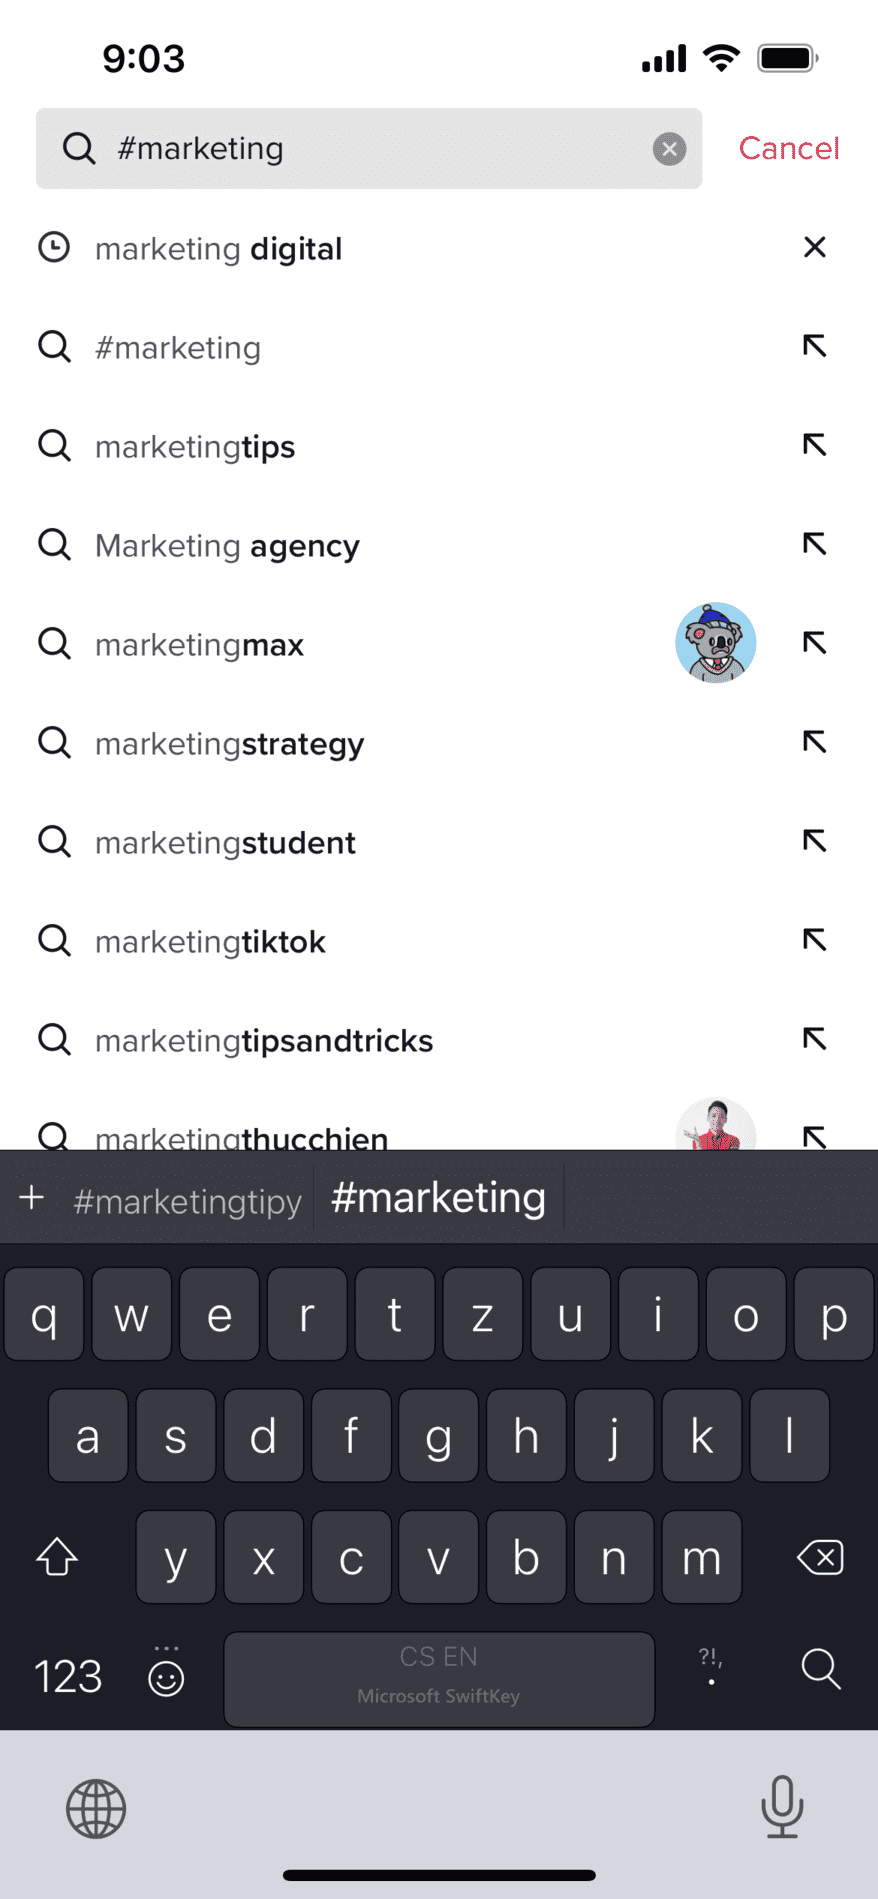 Vyhledávání dle klíčových slov na TikToku je podobně intuitivní jako na Instagramu. Aplikace vám poskytuje mnoho návrhů, které souvisí s vaším vyhledávacím dotazem.